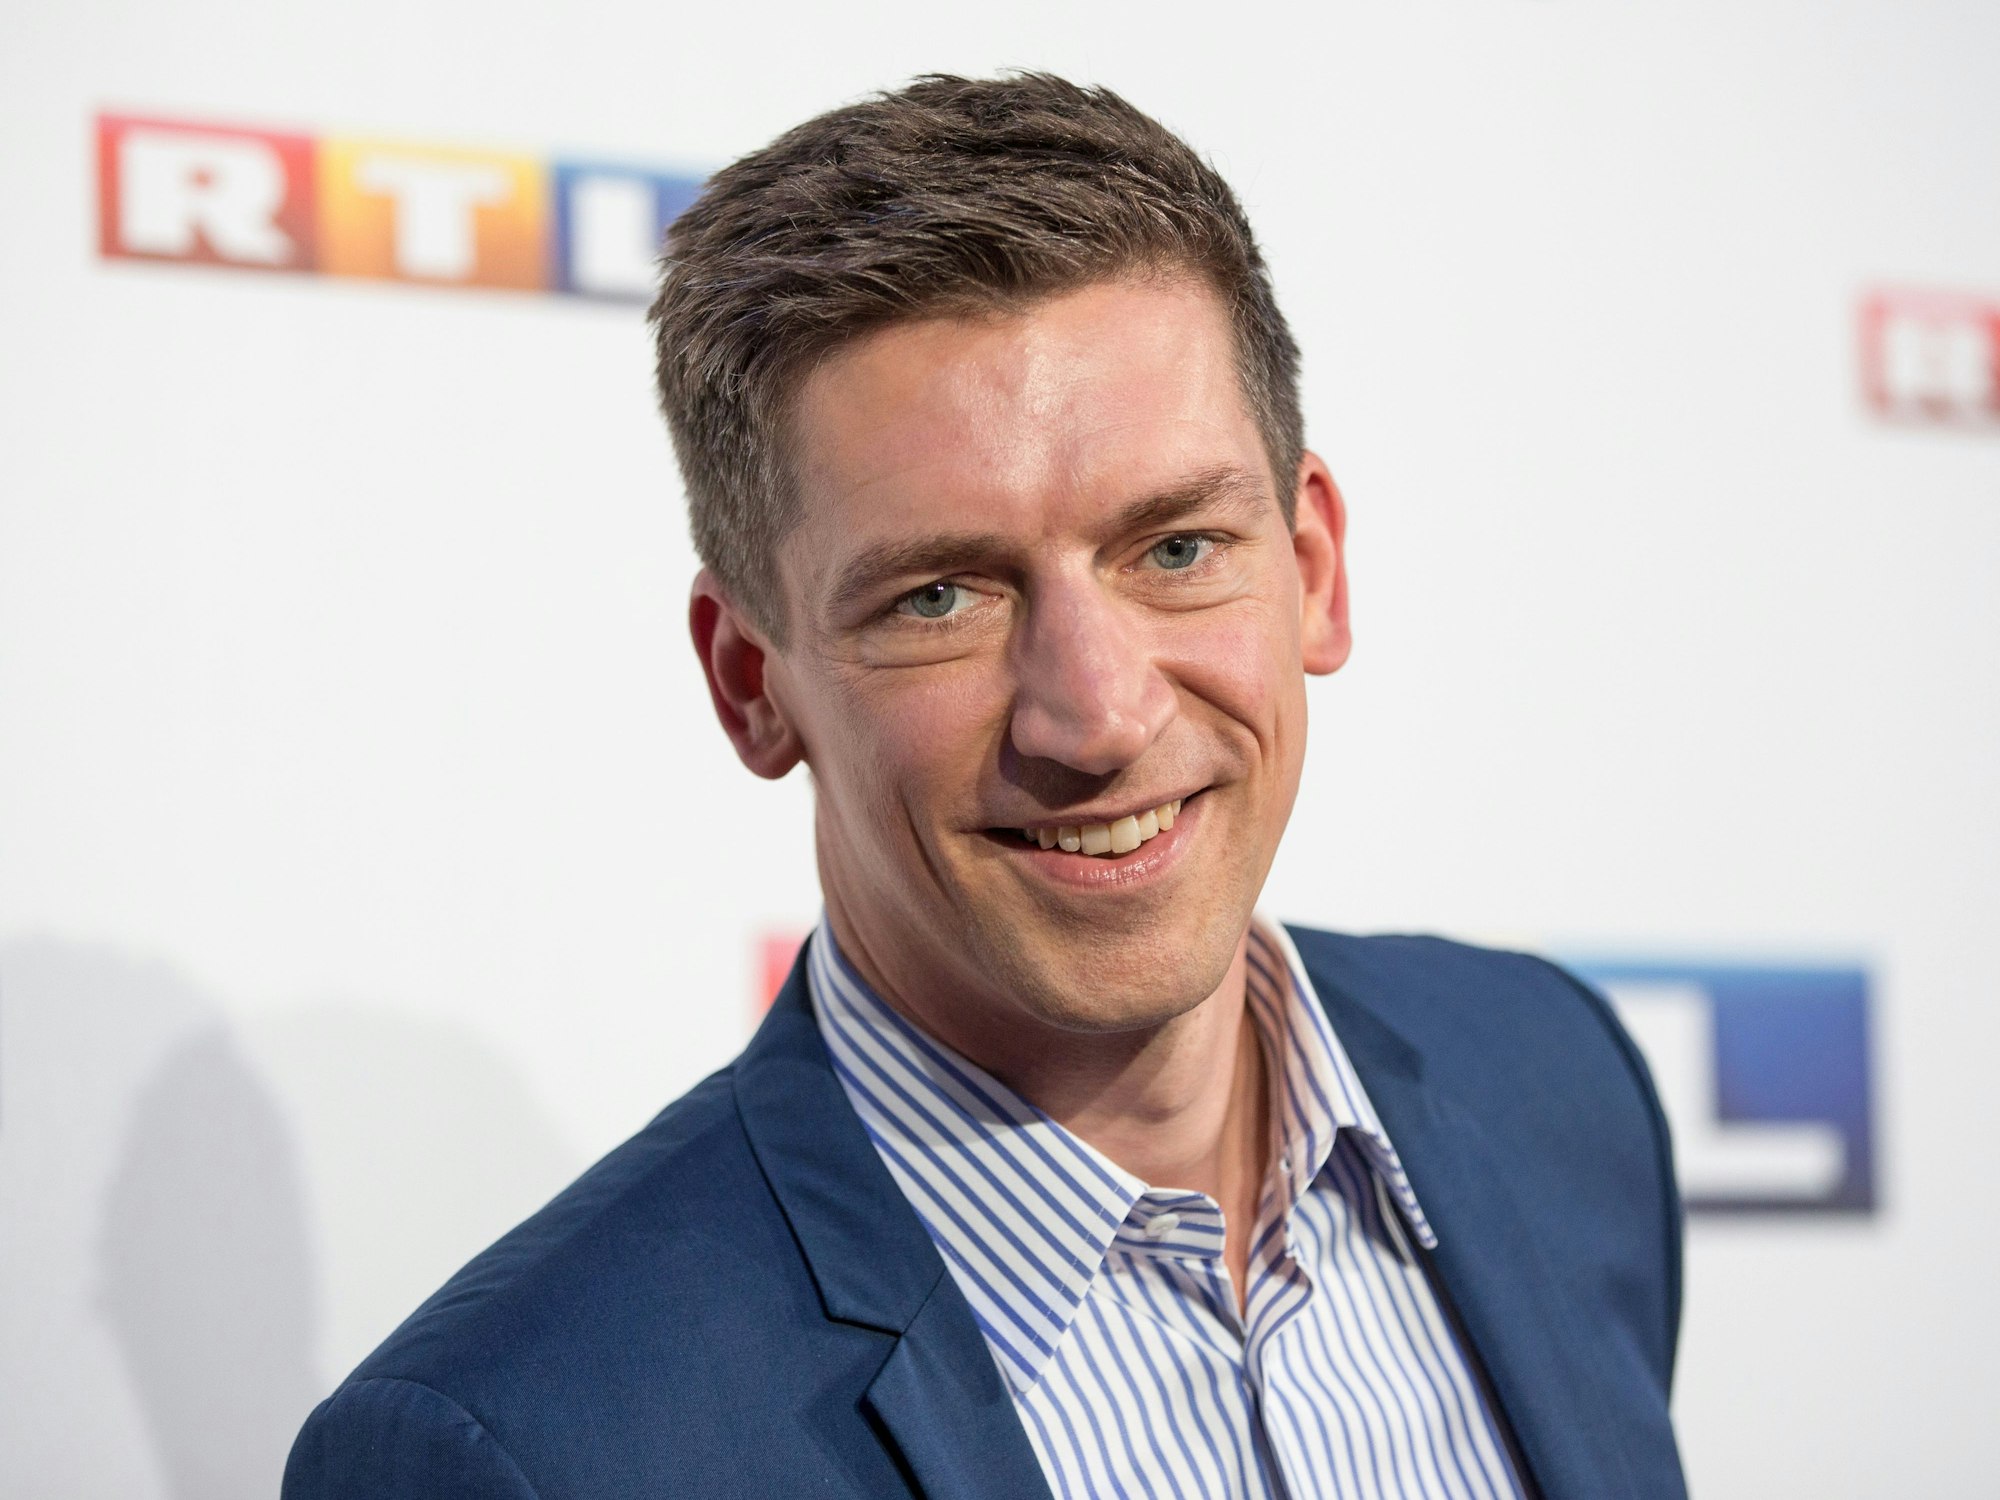 Der Moderator Steffen Hallaschka posiert am 30. August 2016 in Hamburg bei der RTL-Programm-Präsentation 2016/17.